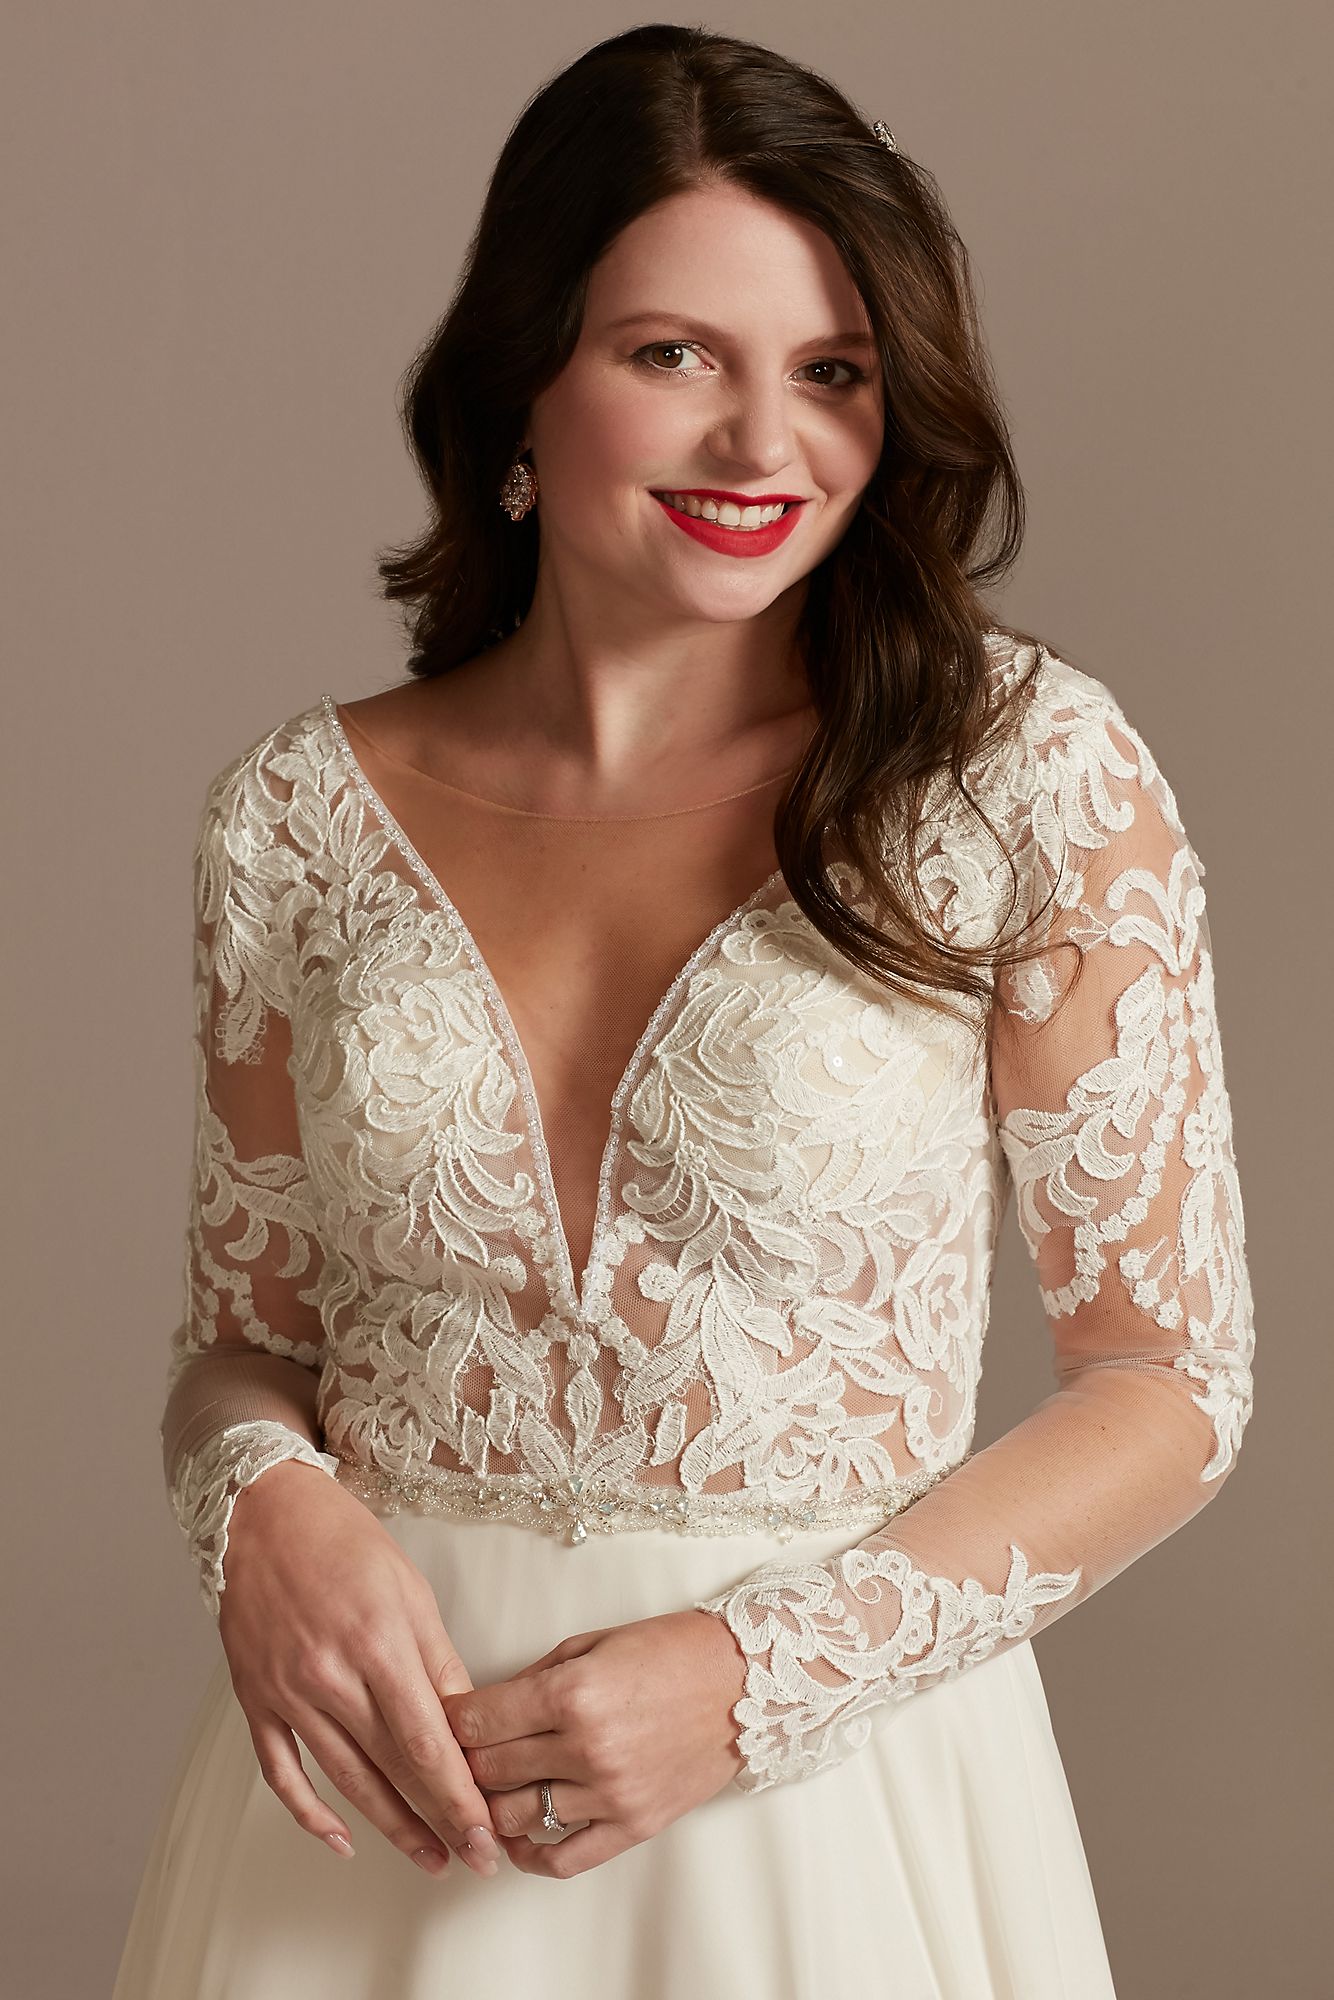 Lace Long Sleeve Chiffon Tall Wedding Dress Galina Signature 4XLSLSWG842